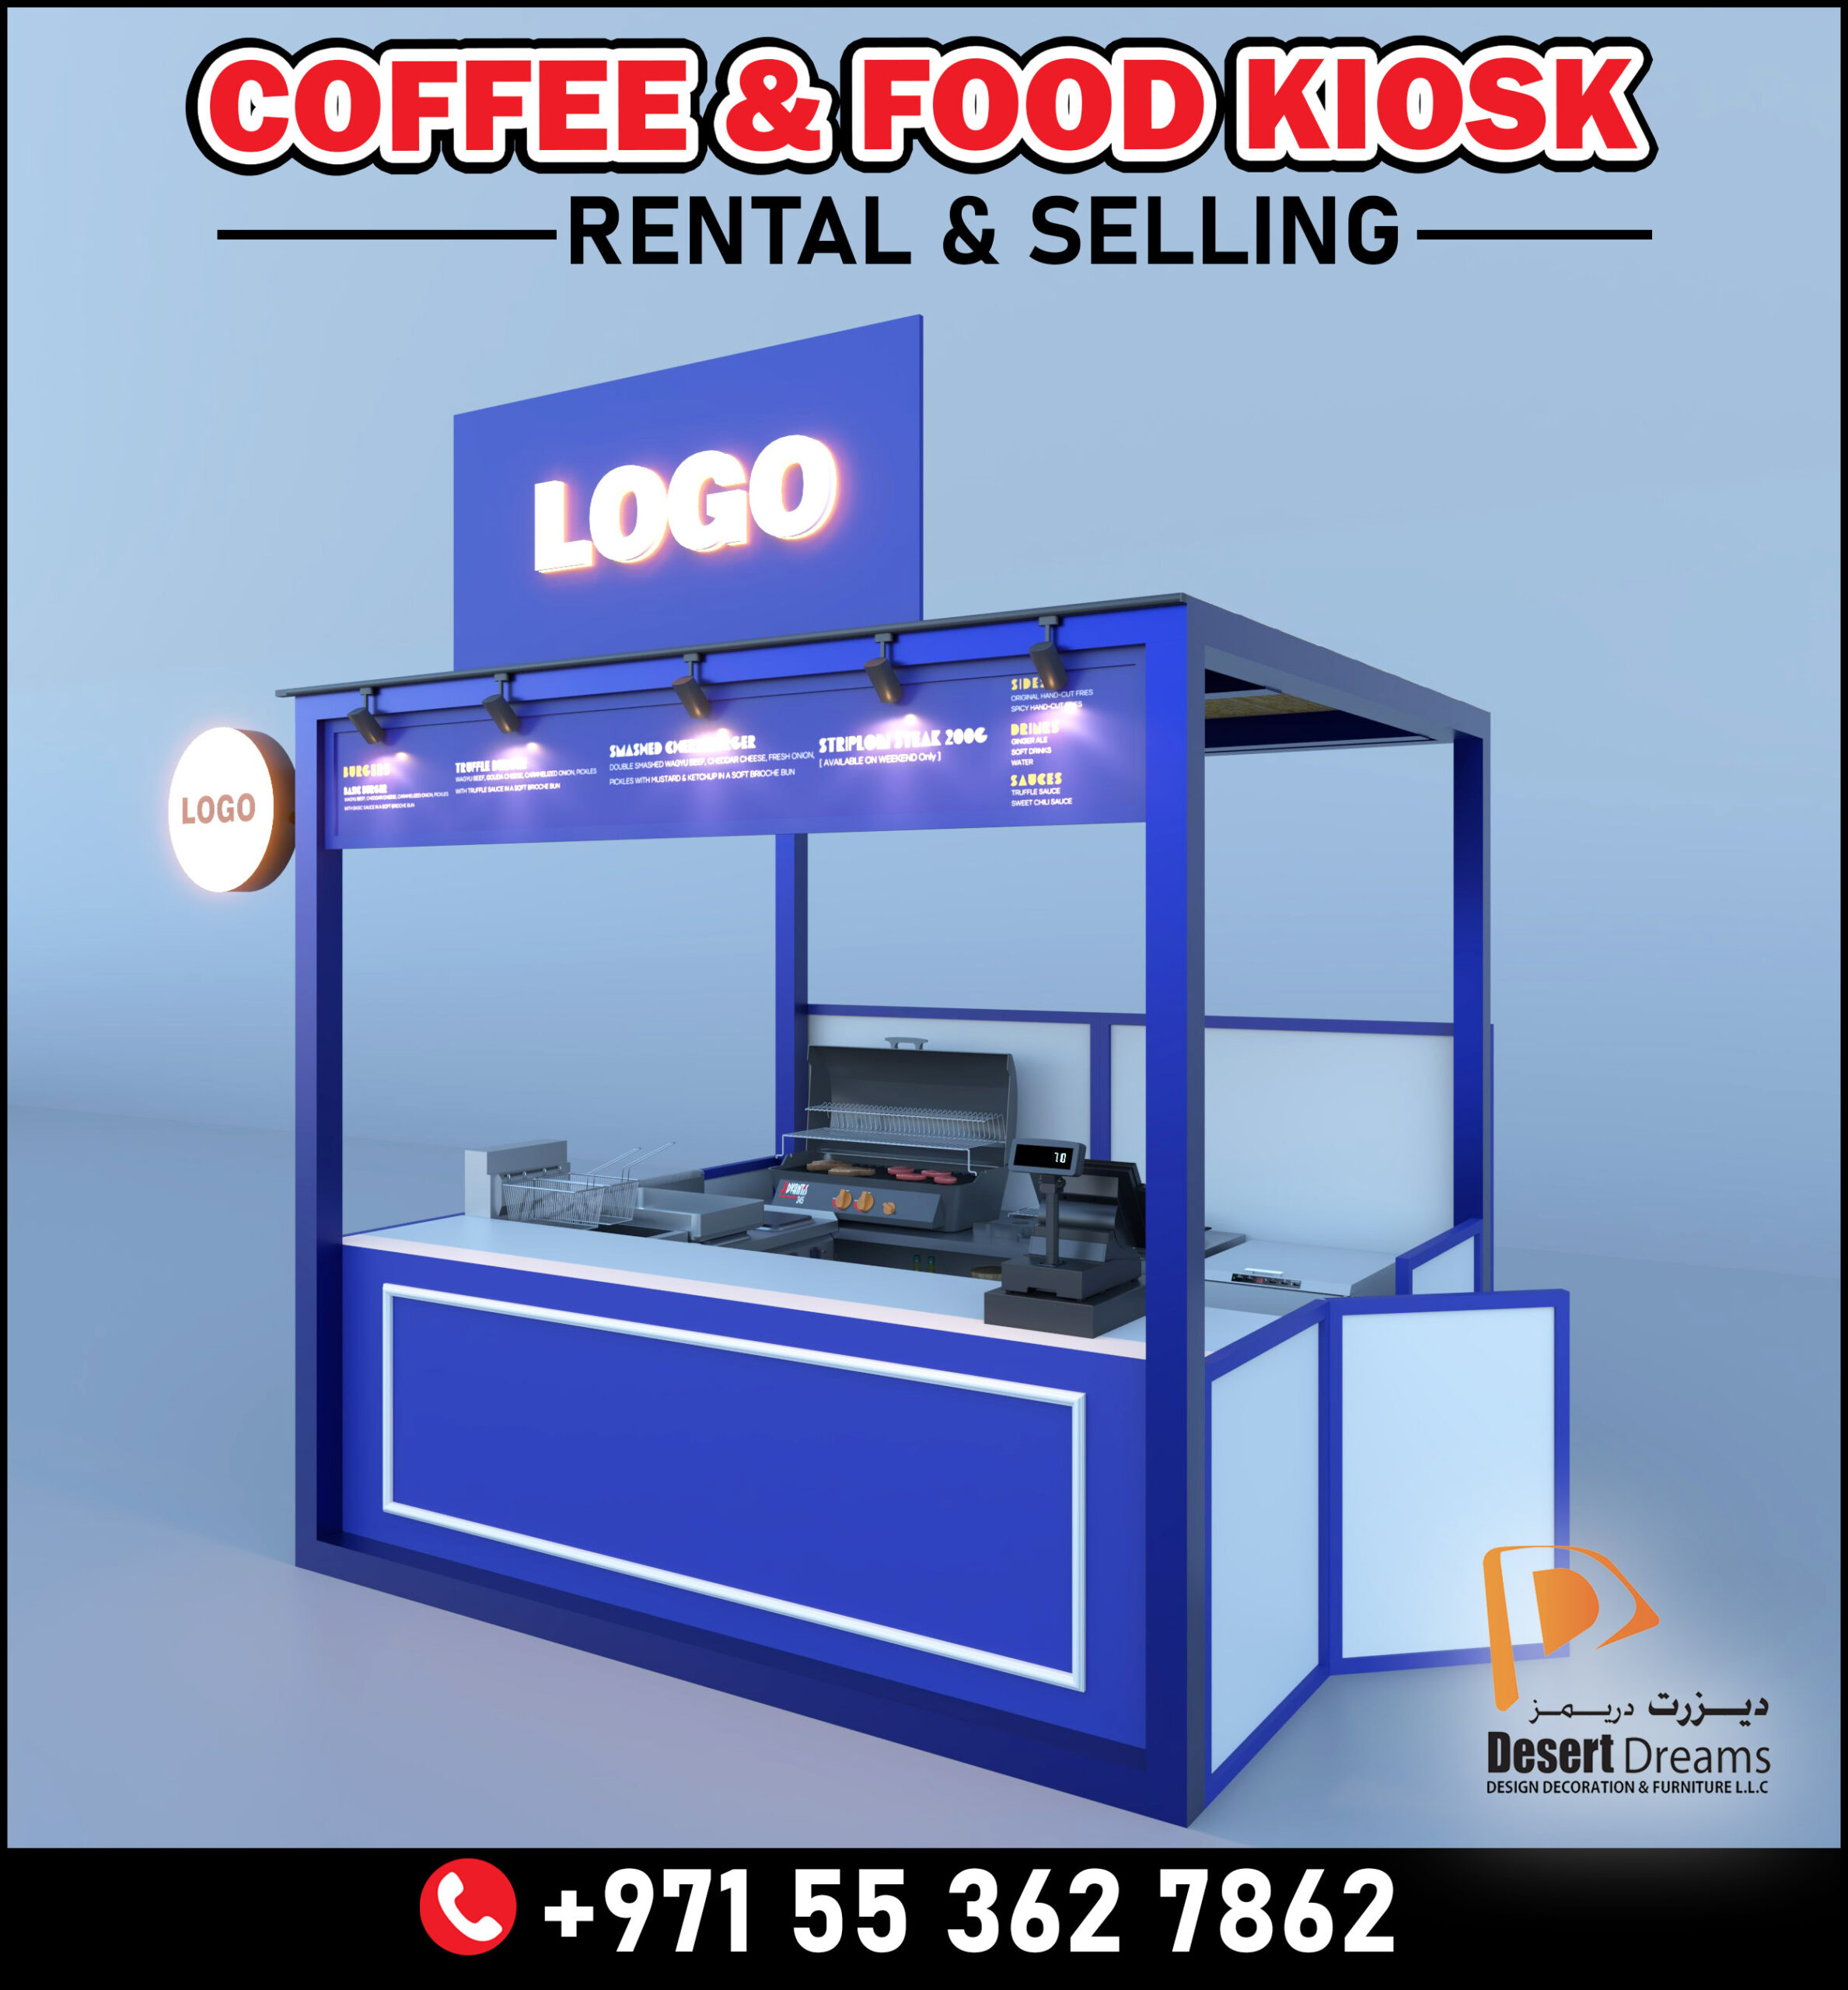 Selling and Rental Kiosk in UAE.jpg